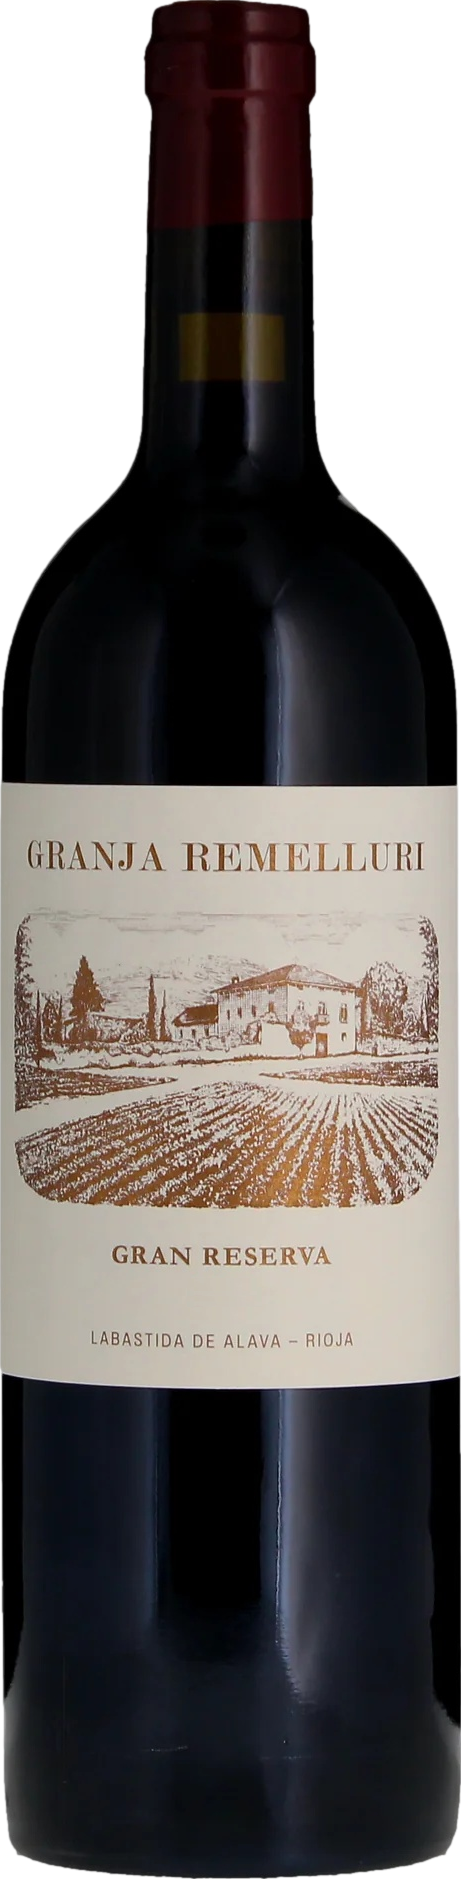 Remelluri Granja Gran Reserva Rioja 2012 Remelluri 8wines DACH